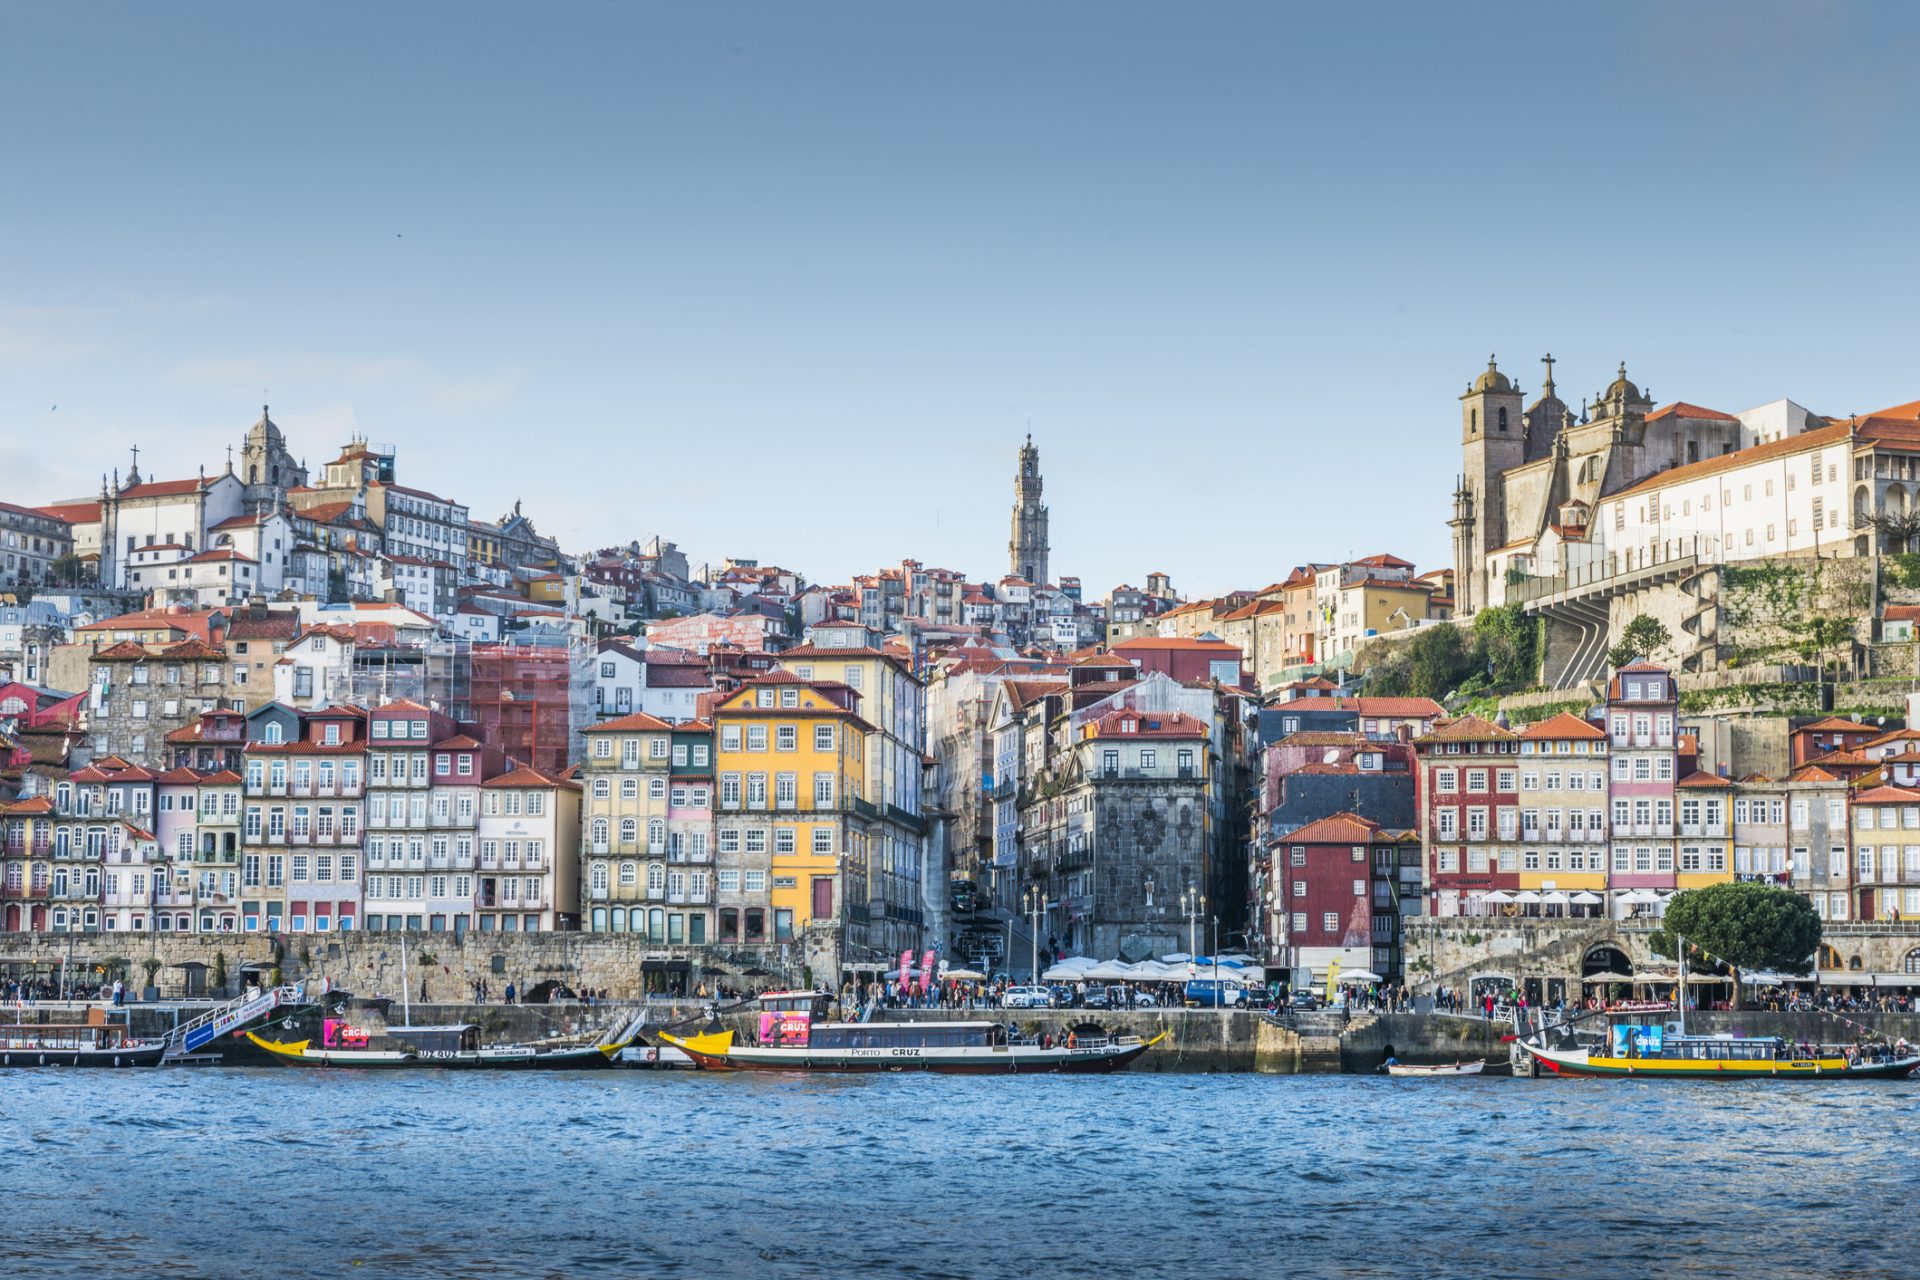 4. Porto, Portugal